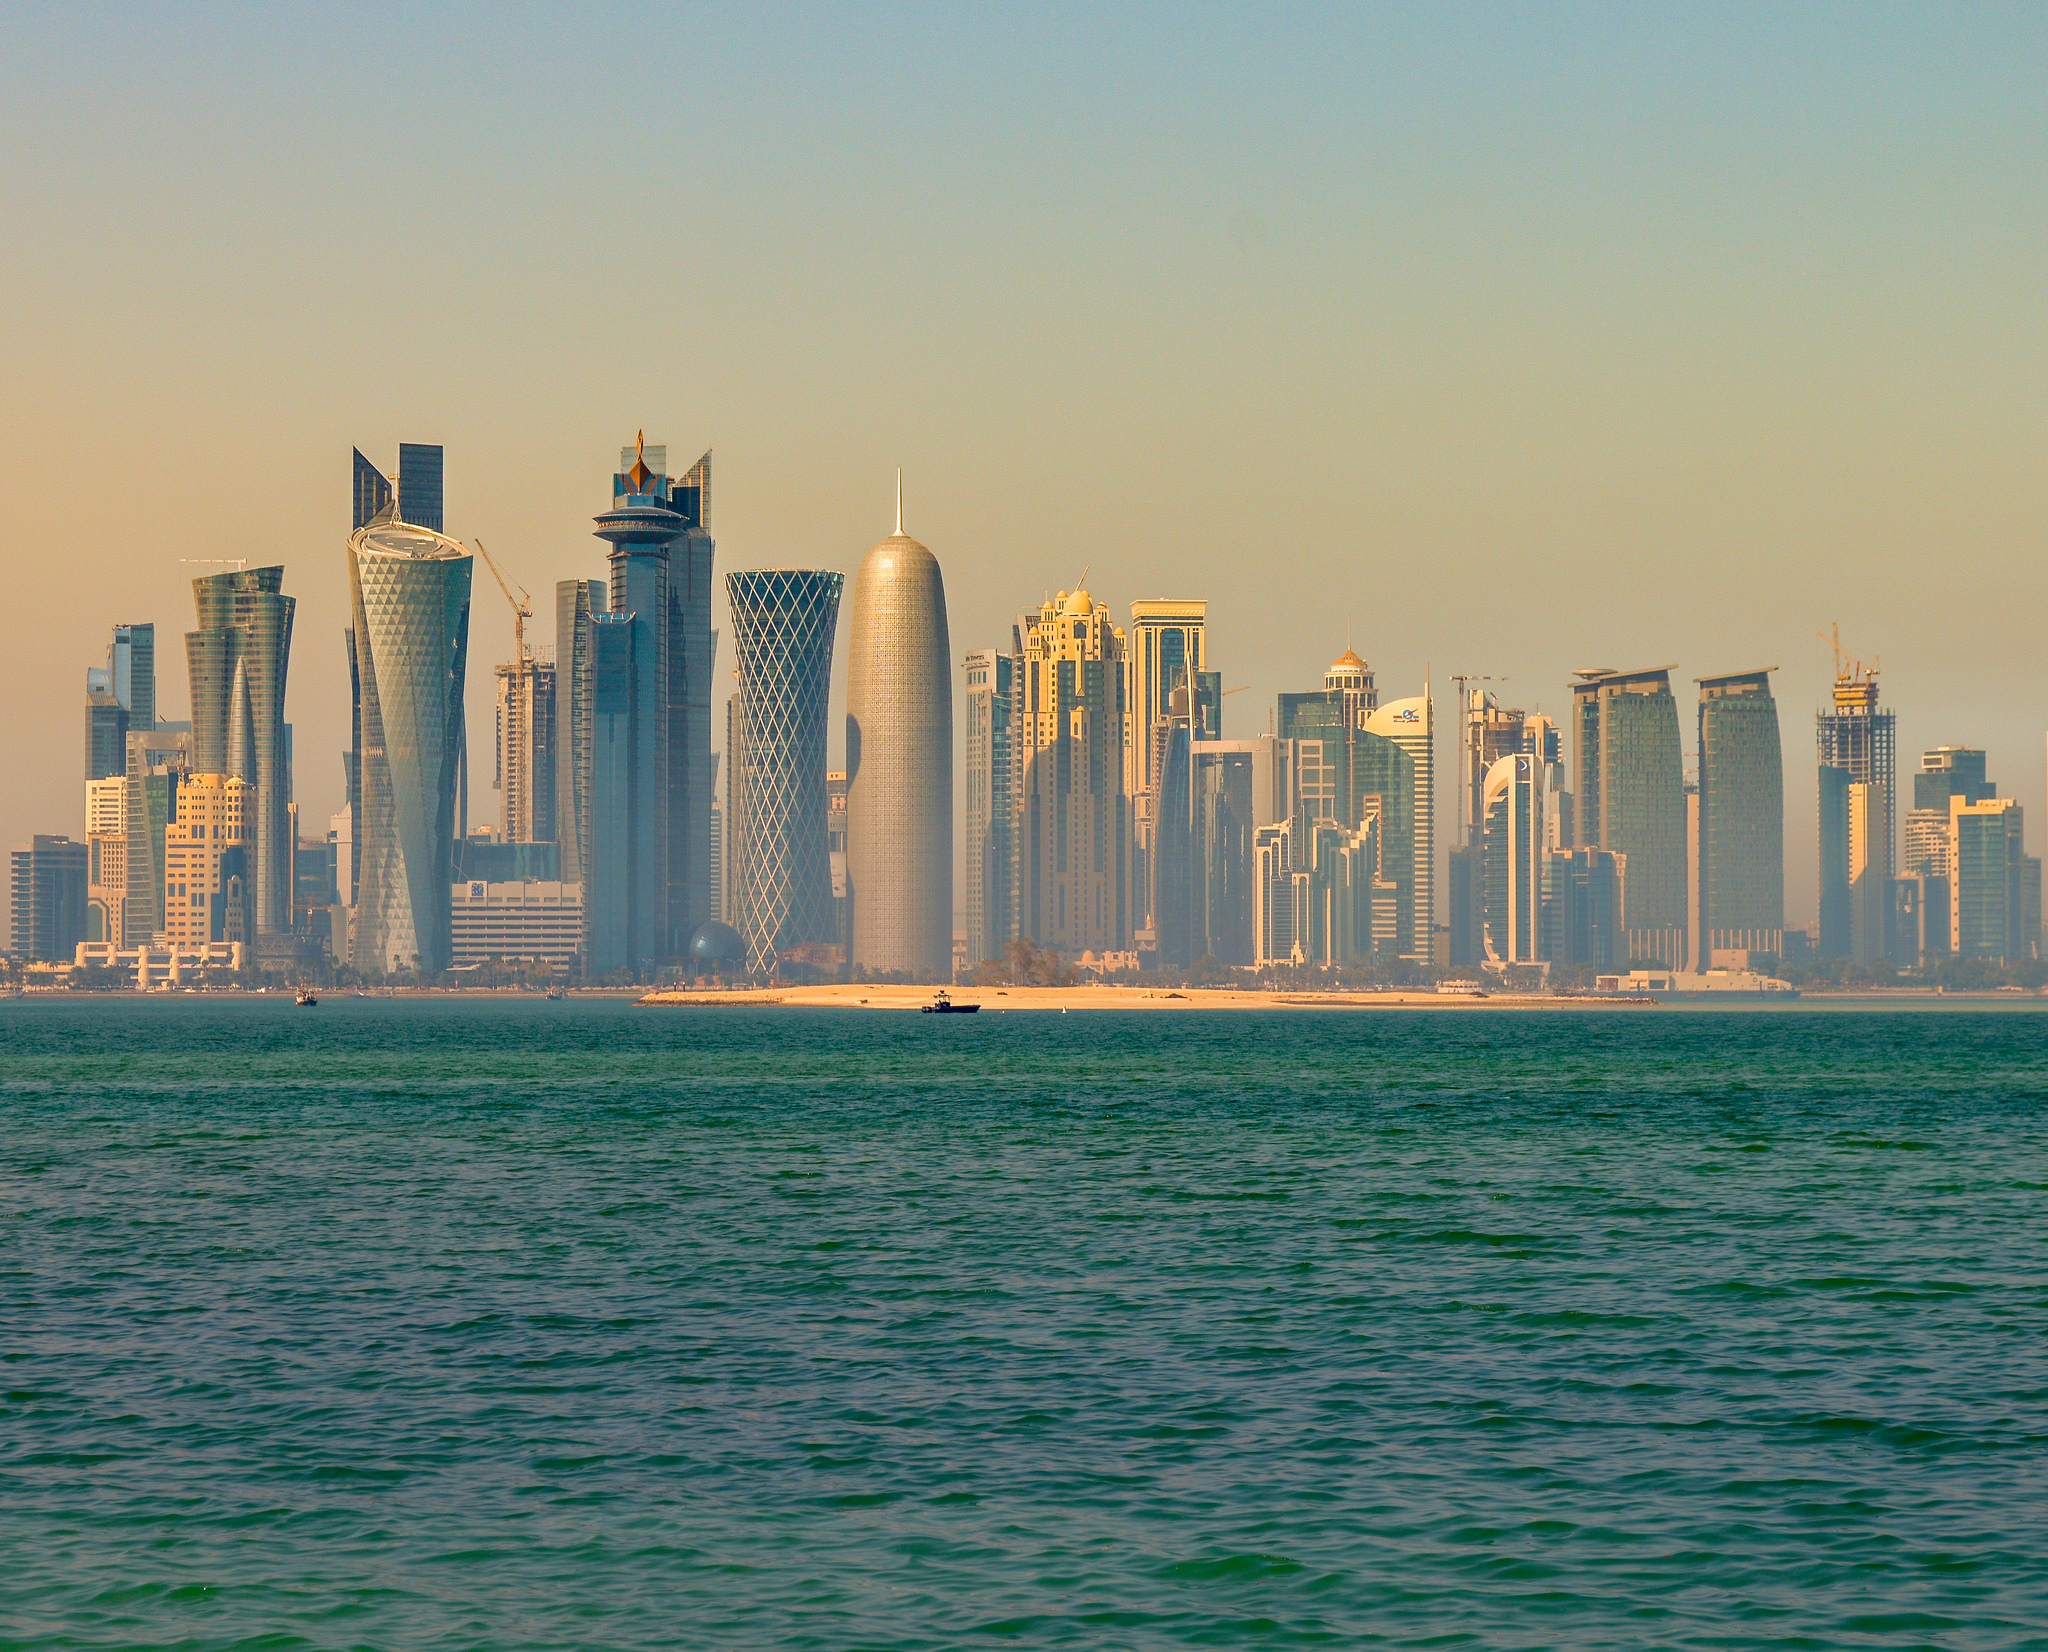 Vista de Doha, capital de Catar (fotografia: Francisco Anzola).